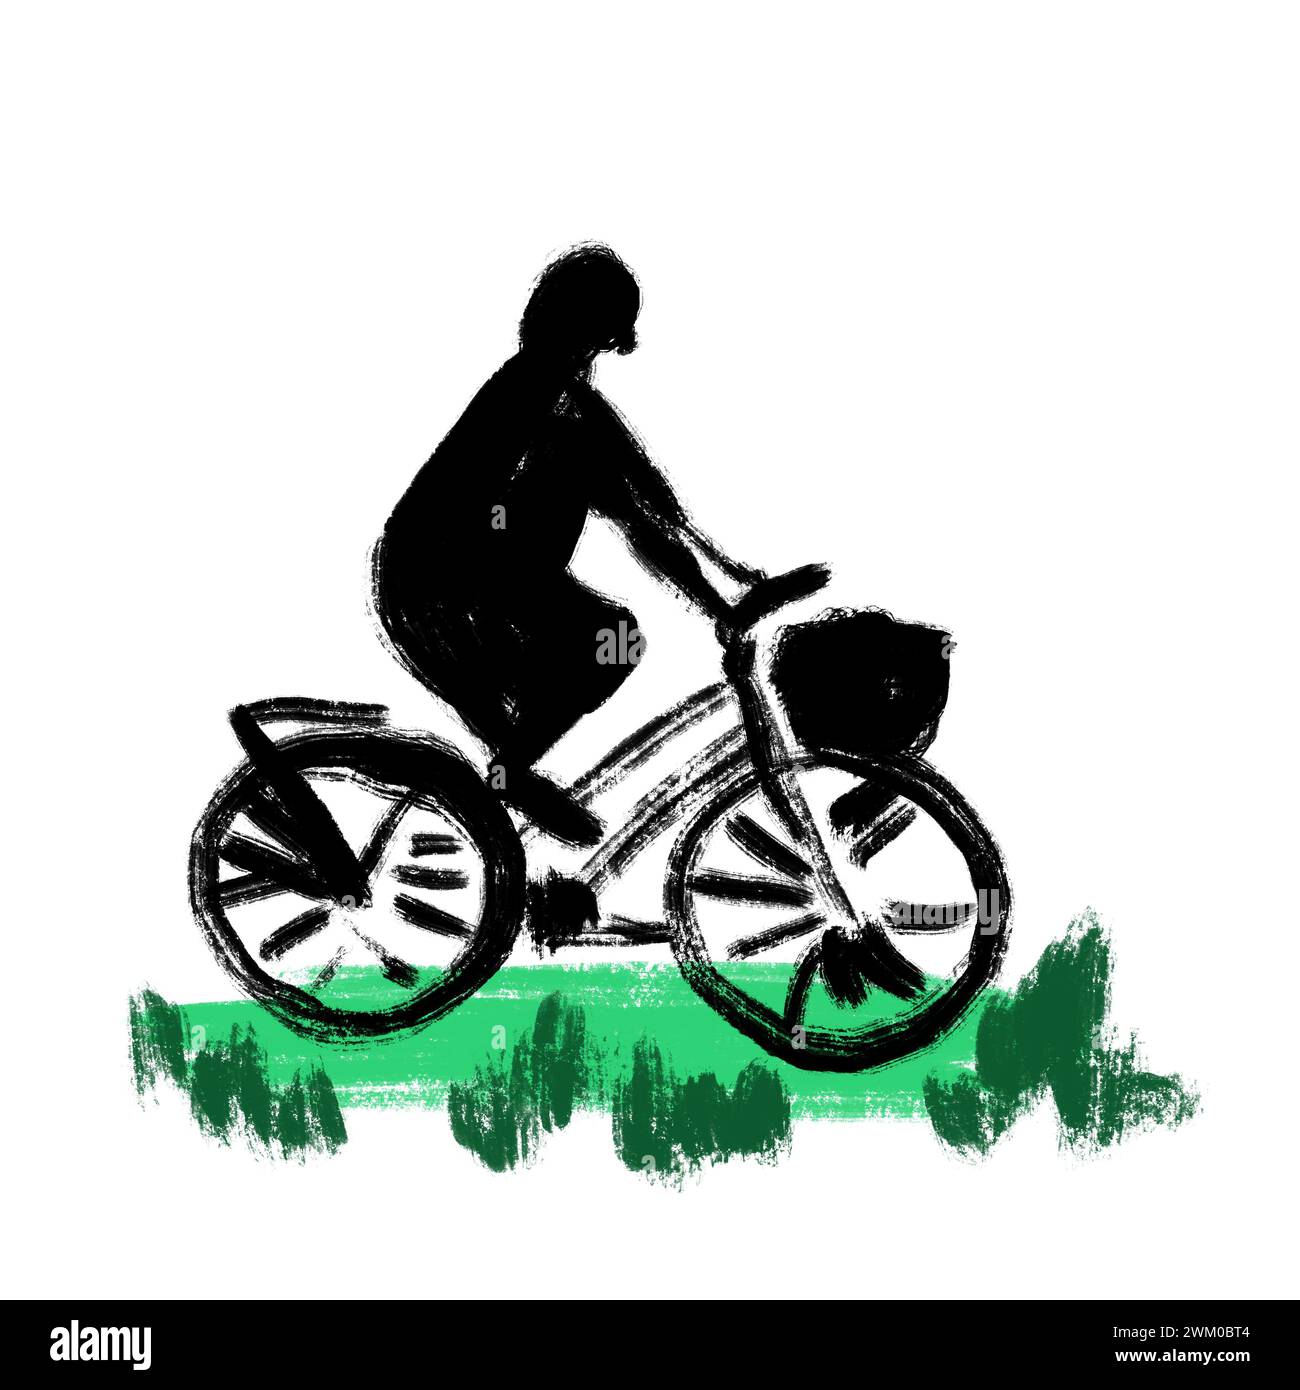 Illustrazione disegnata a mano di donna che va in bicicletta, silhouette nera con erba verde. Trasporto cittadino stampa, eco-concept attività ricreative all'aperto, corsa moderna attiva alla moda, stile sketch Foto Stock